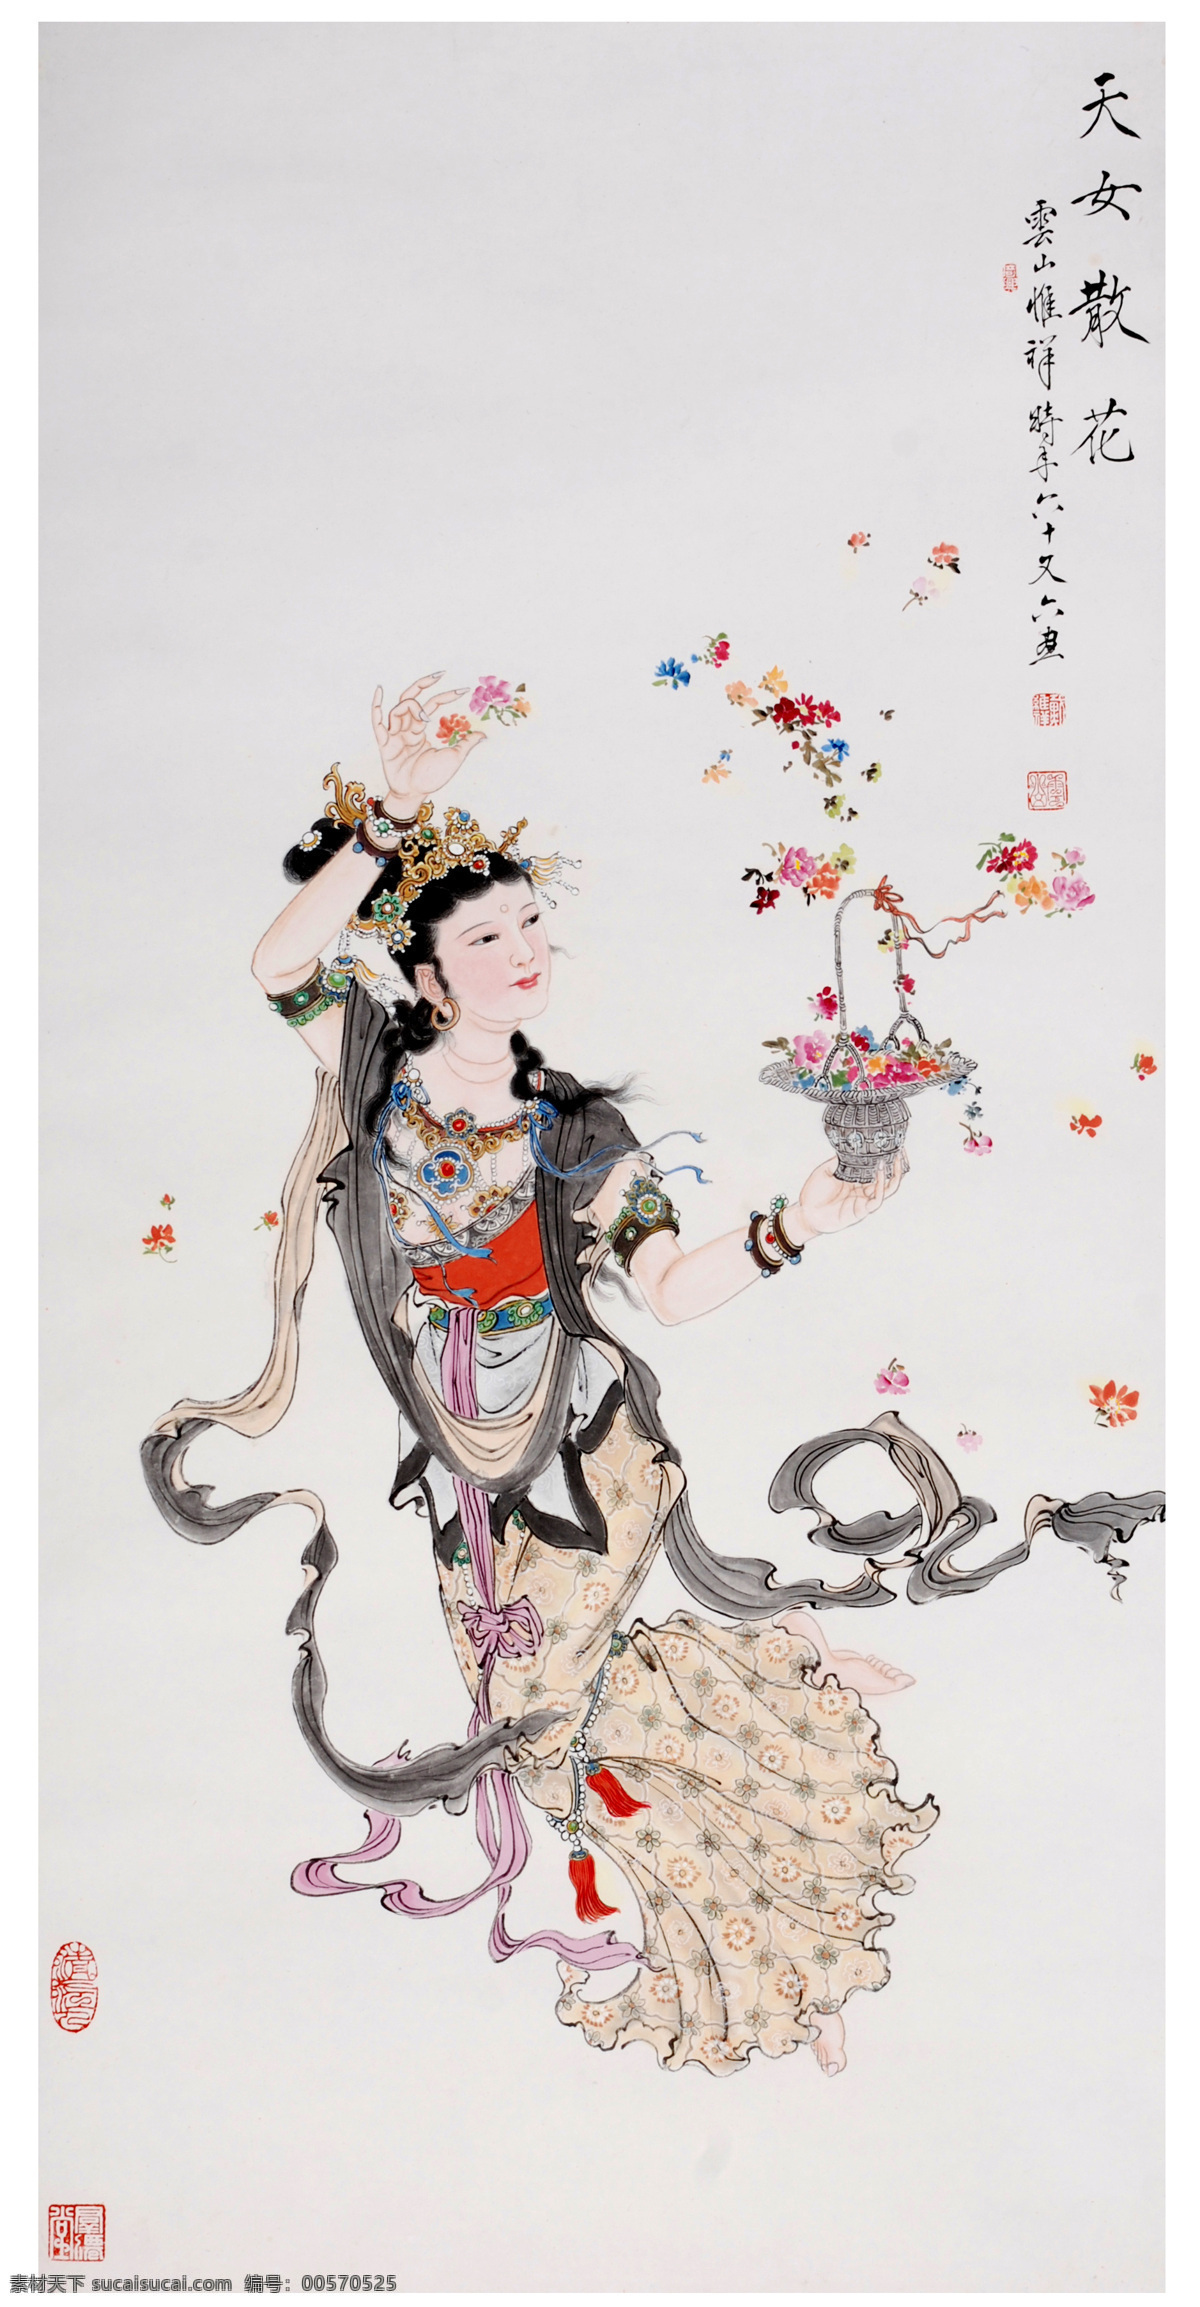 传统文化 国画人物 绘画书法 人物画 天女散花 文化艺术 设计素材 模板下载 戴维祥作品